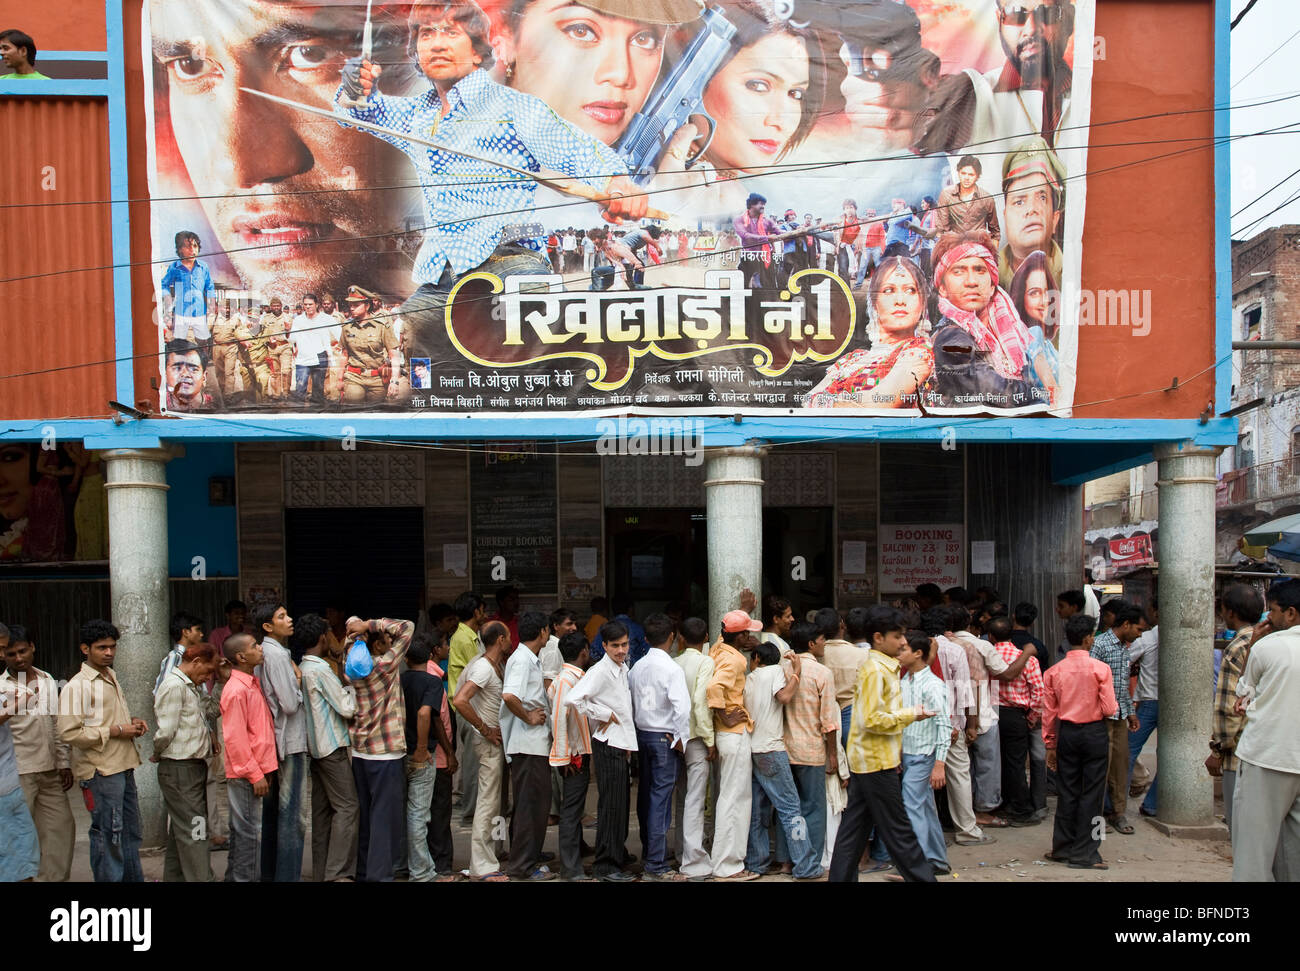 Unzufriedene frauen suchen männer in mumbai